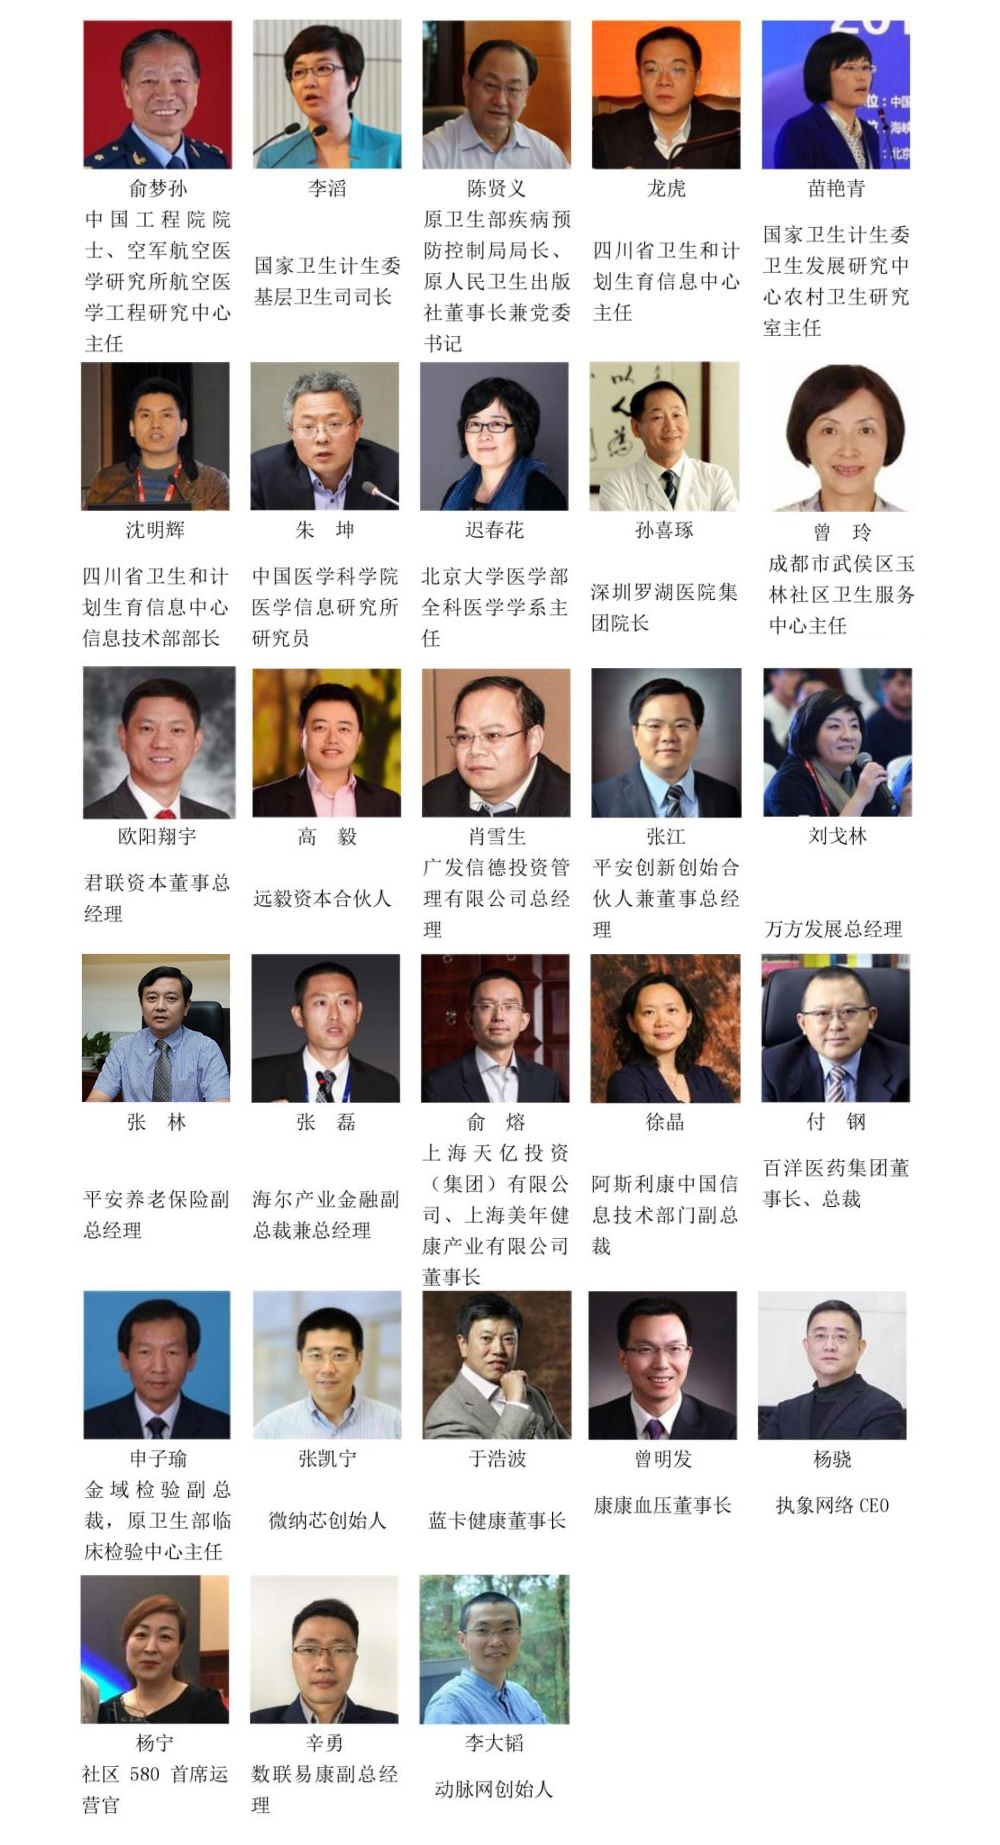 2017中国基层医疗创新实践论坛